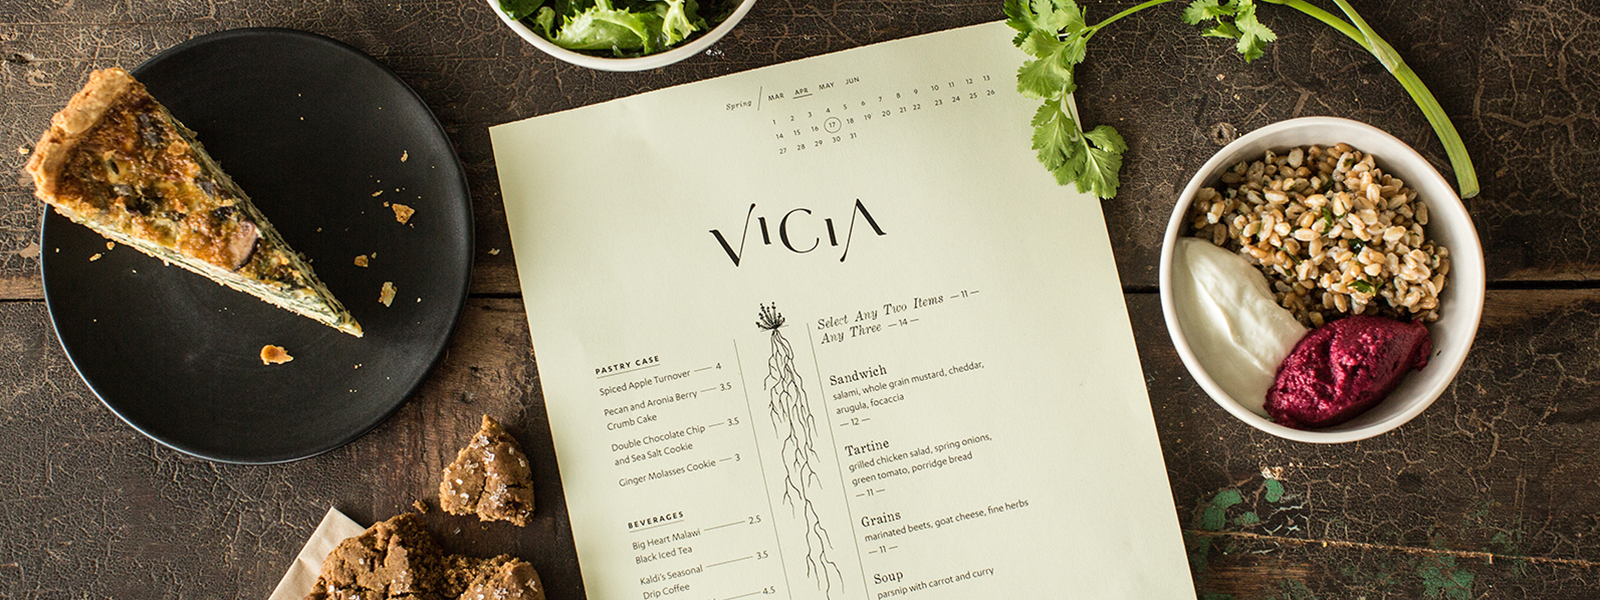 Aerial shot of Vicia menu and food